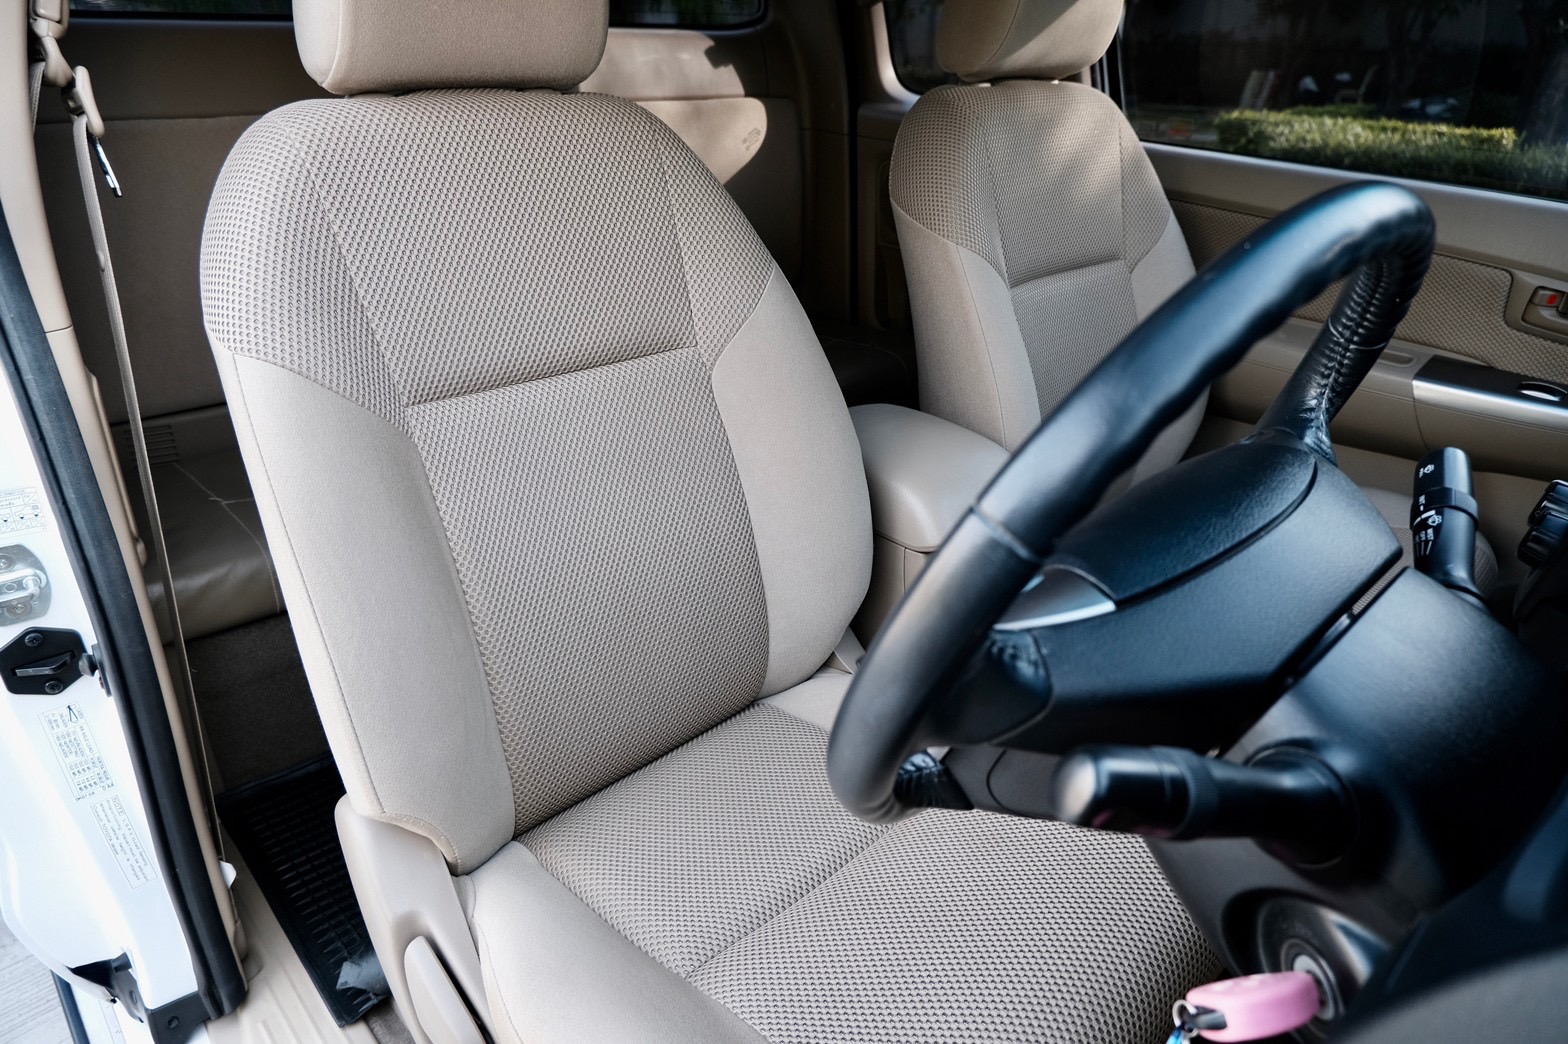 ไมล์ 53,000 กม. Toyota Hilux VigoChamp 2.5G Prerunner Smart Cab 2015 ออโต้ ดีเซล VN Turbo สีขาว